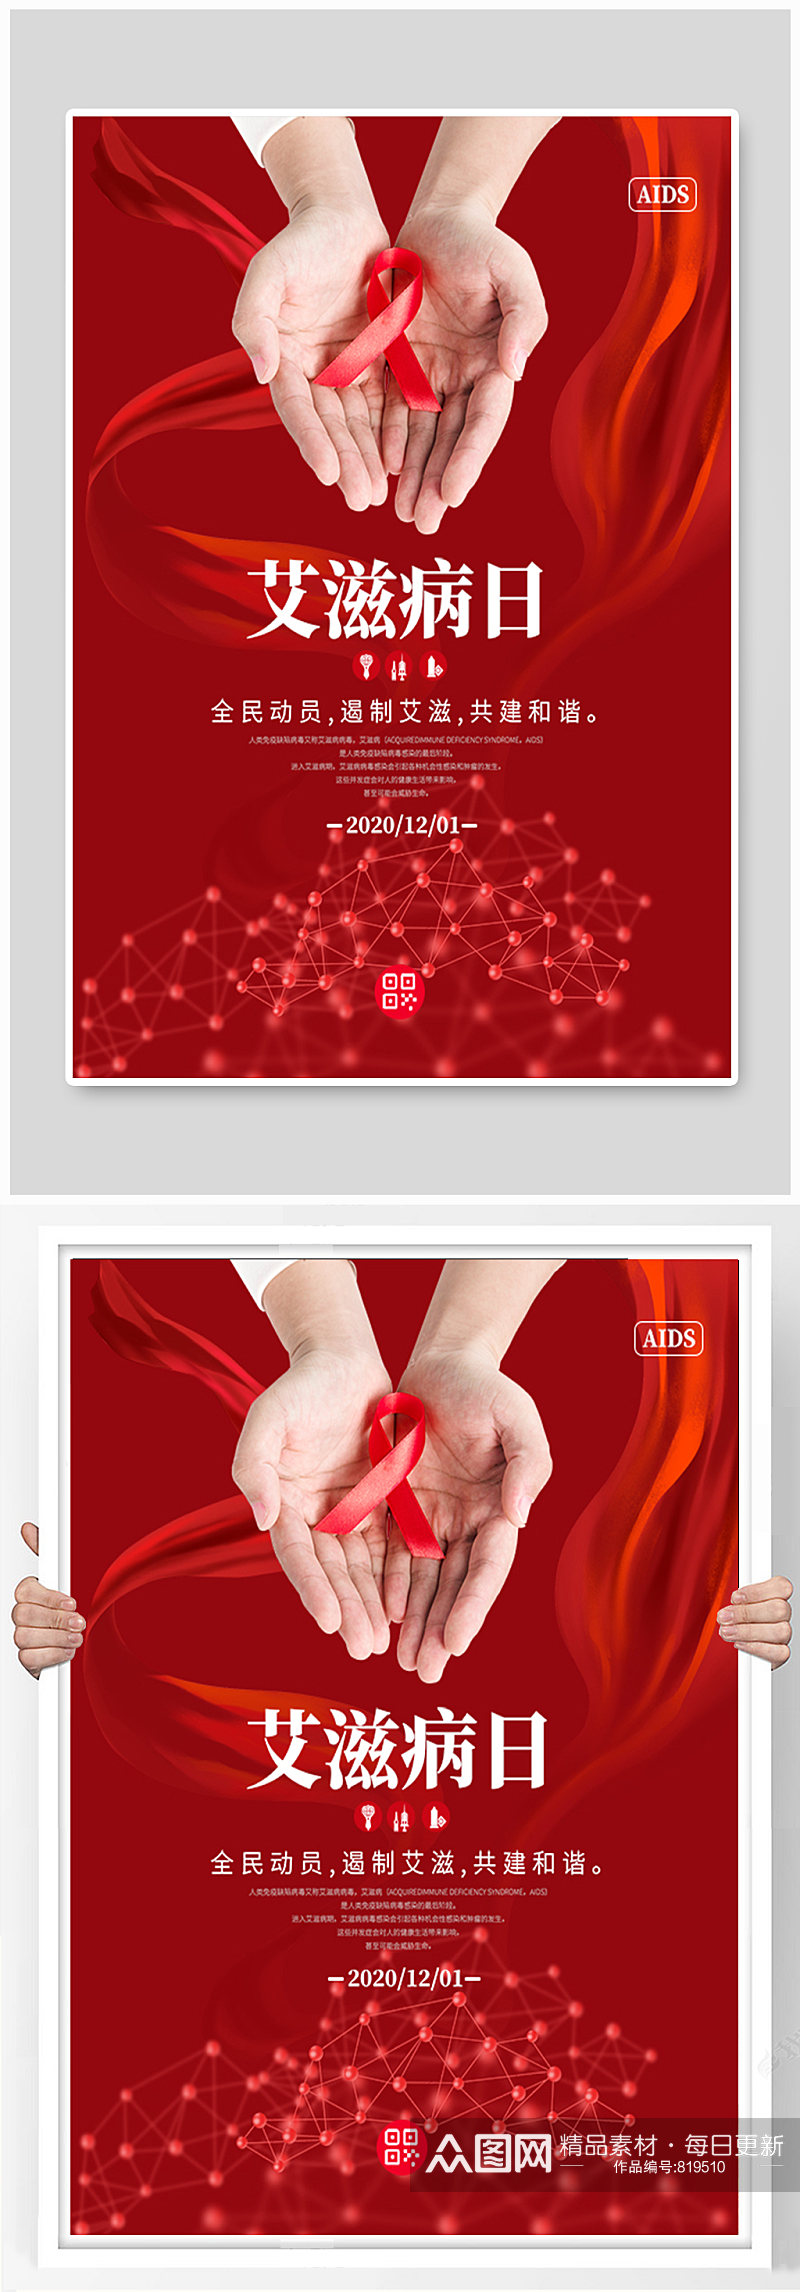 艾滋病日红色简约丝带海报素材